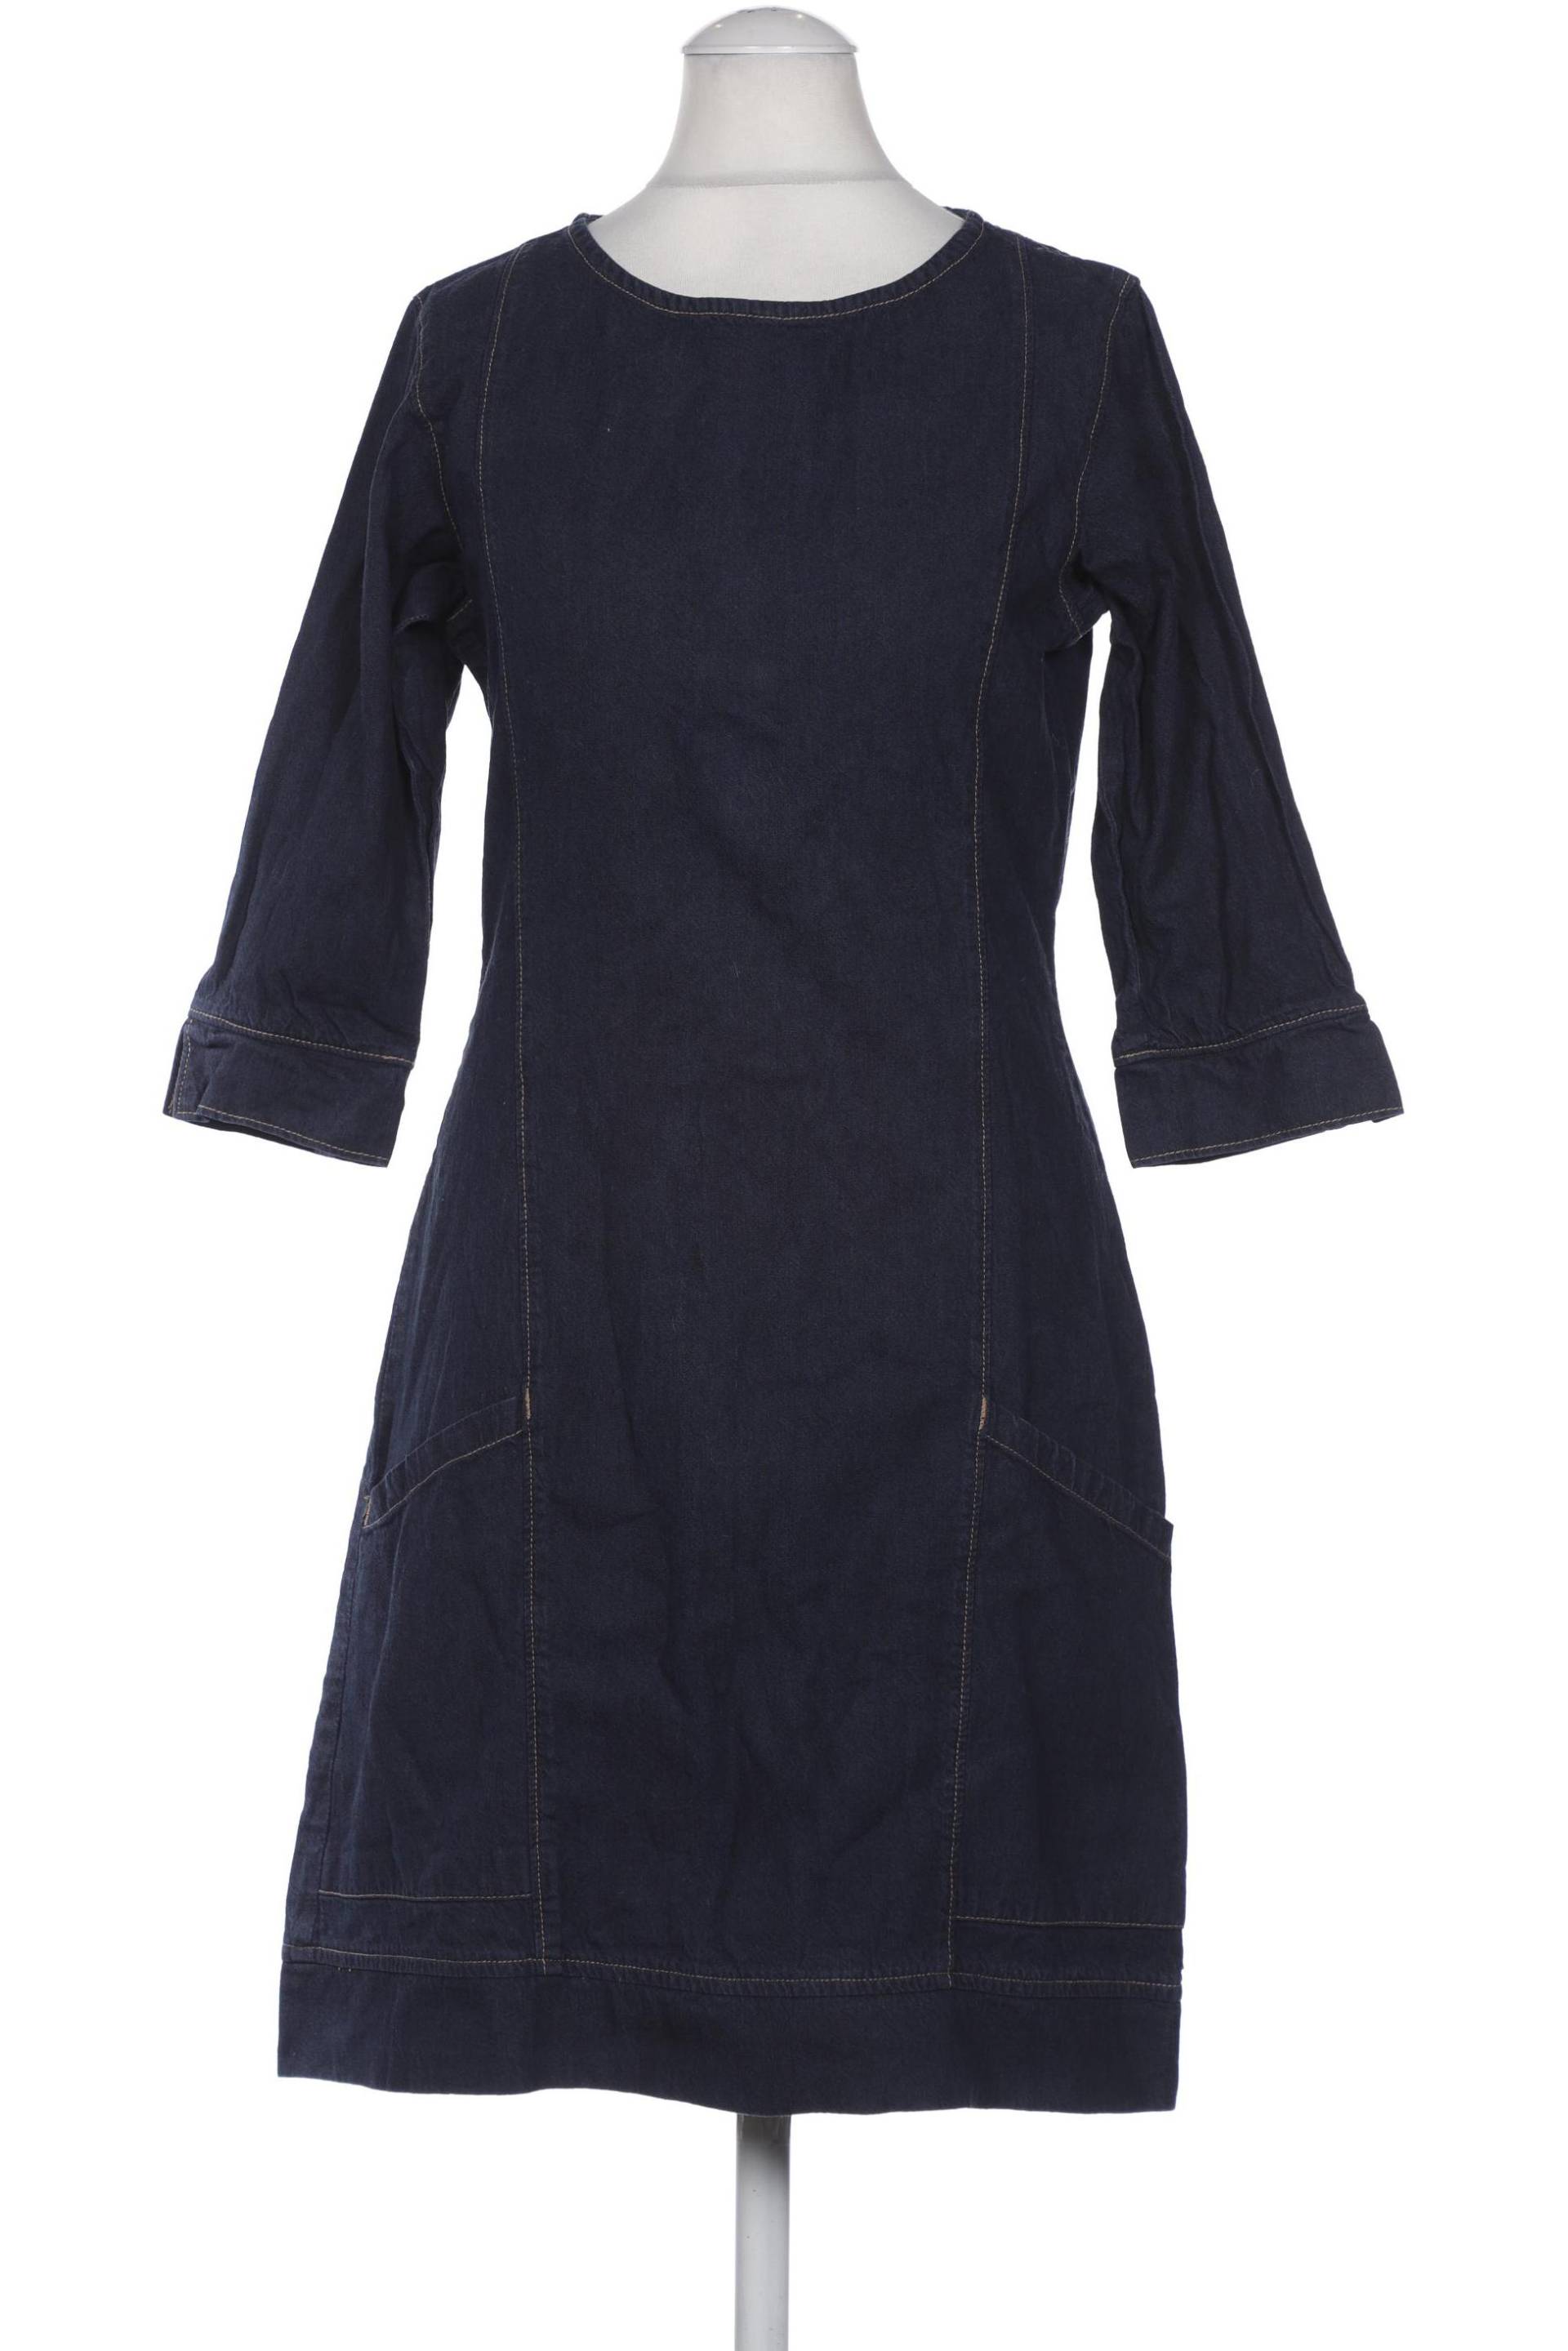 Tranquillo Damen Kleid, marineblau, Gr. 36 von TRANQUILLO